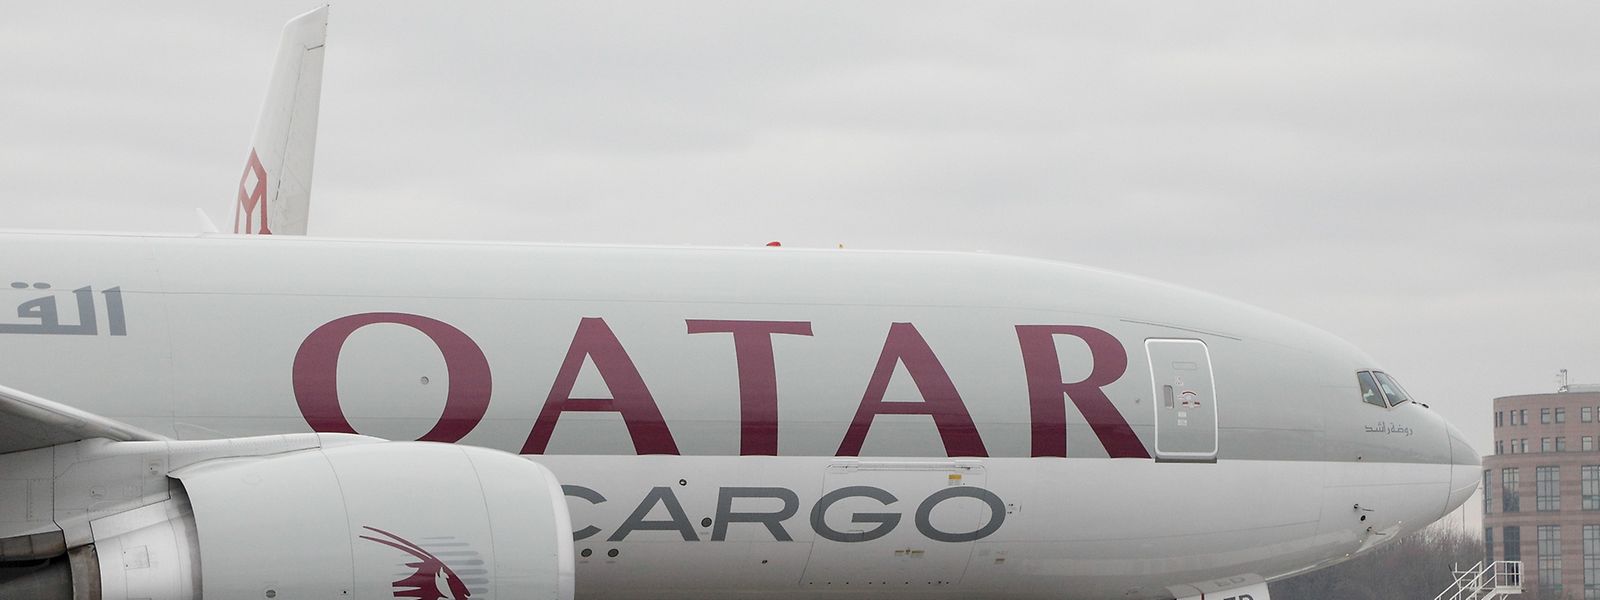 Im zweiten Halbjahr 2016 hat Qatar bereits zwischen zwölf und 17 Flügen pro Woche via Luxemburg betrieben, wie der Frachtabfertiger LuxairCargo auf Nachfrage bestätigte.